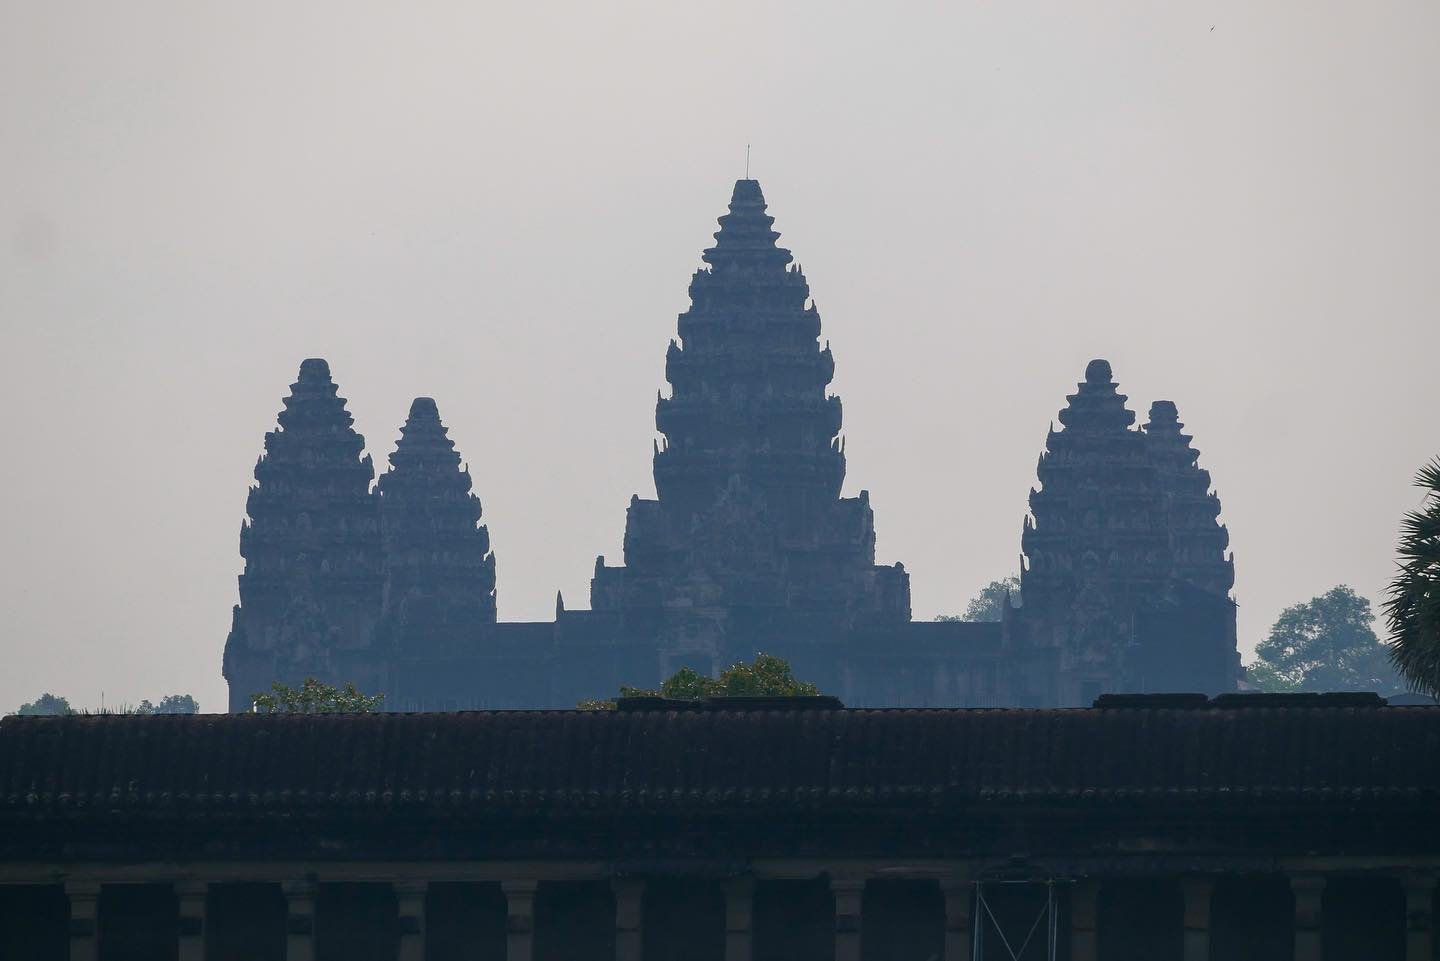 Angkor Wat est pratiquement indescriptible. Tant de beaut&eacute;, de travail, d&rsquo;histoire, de d&eacute;tails&hellip; et c&rsquo;est immense!

C&rsquo;est le plus grand monument religieux du monde. Il est l&rsquo;image m&ecirc;me qu&rsquo;on a d